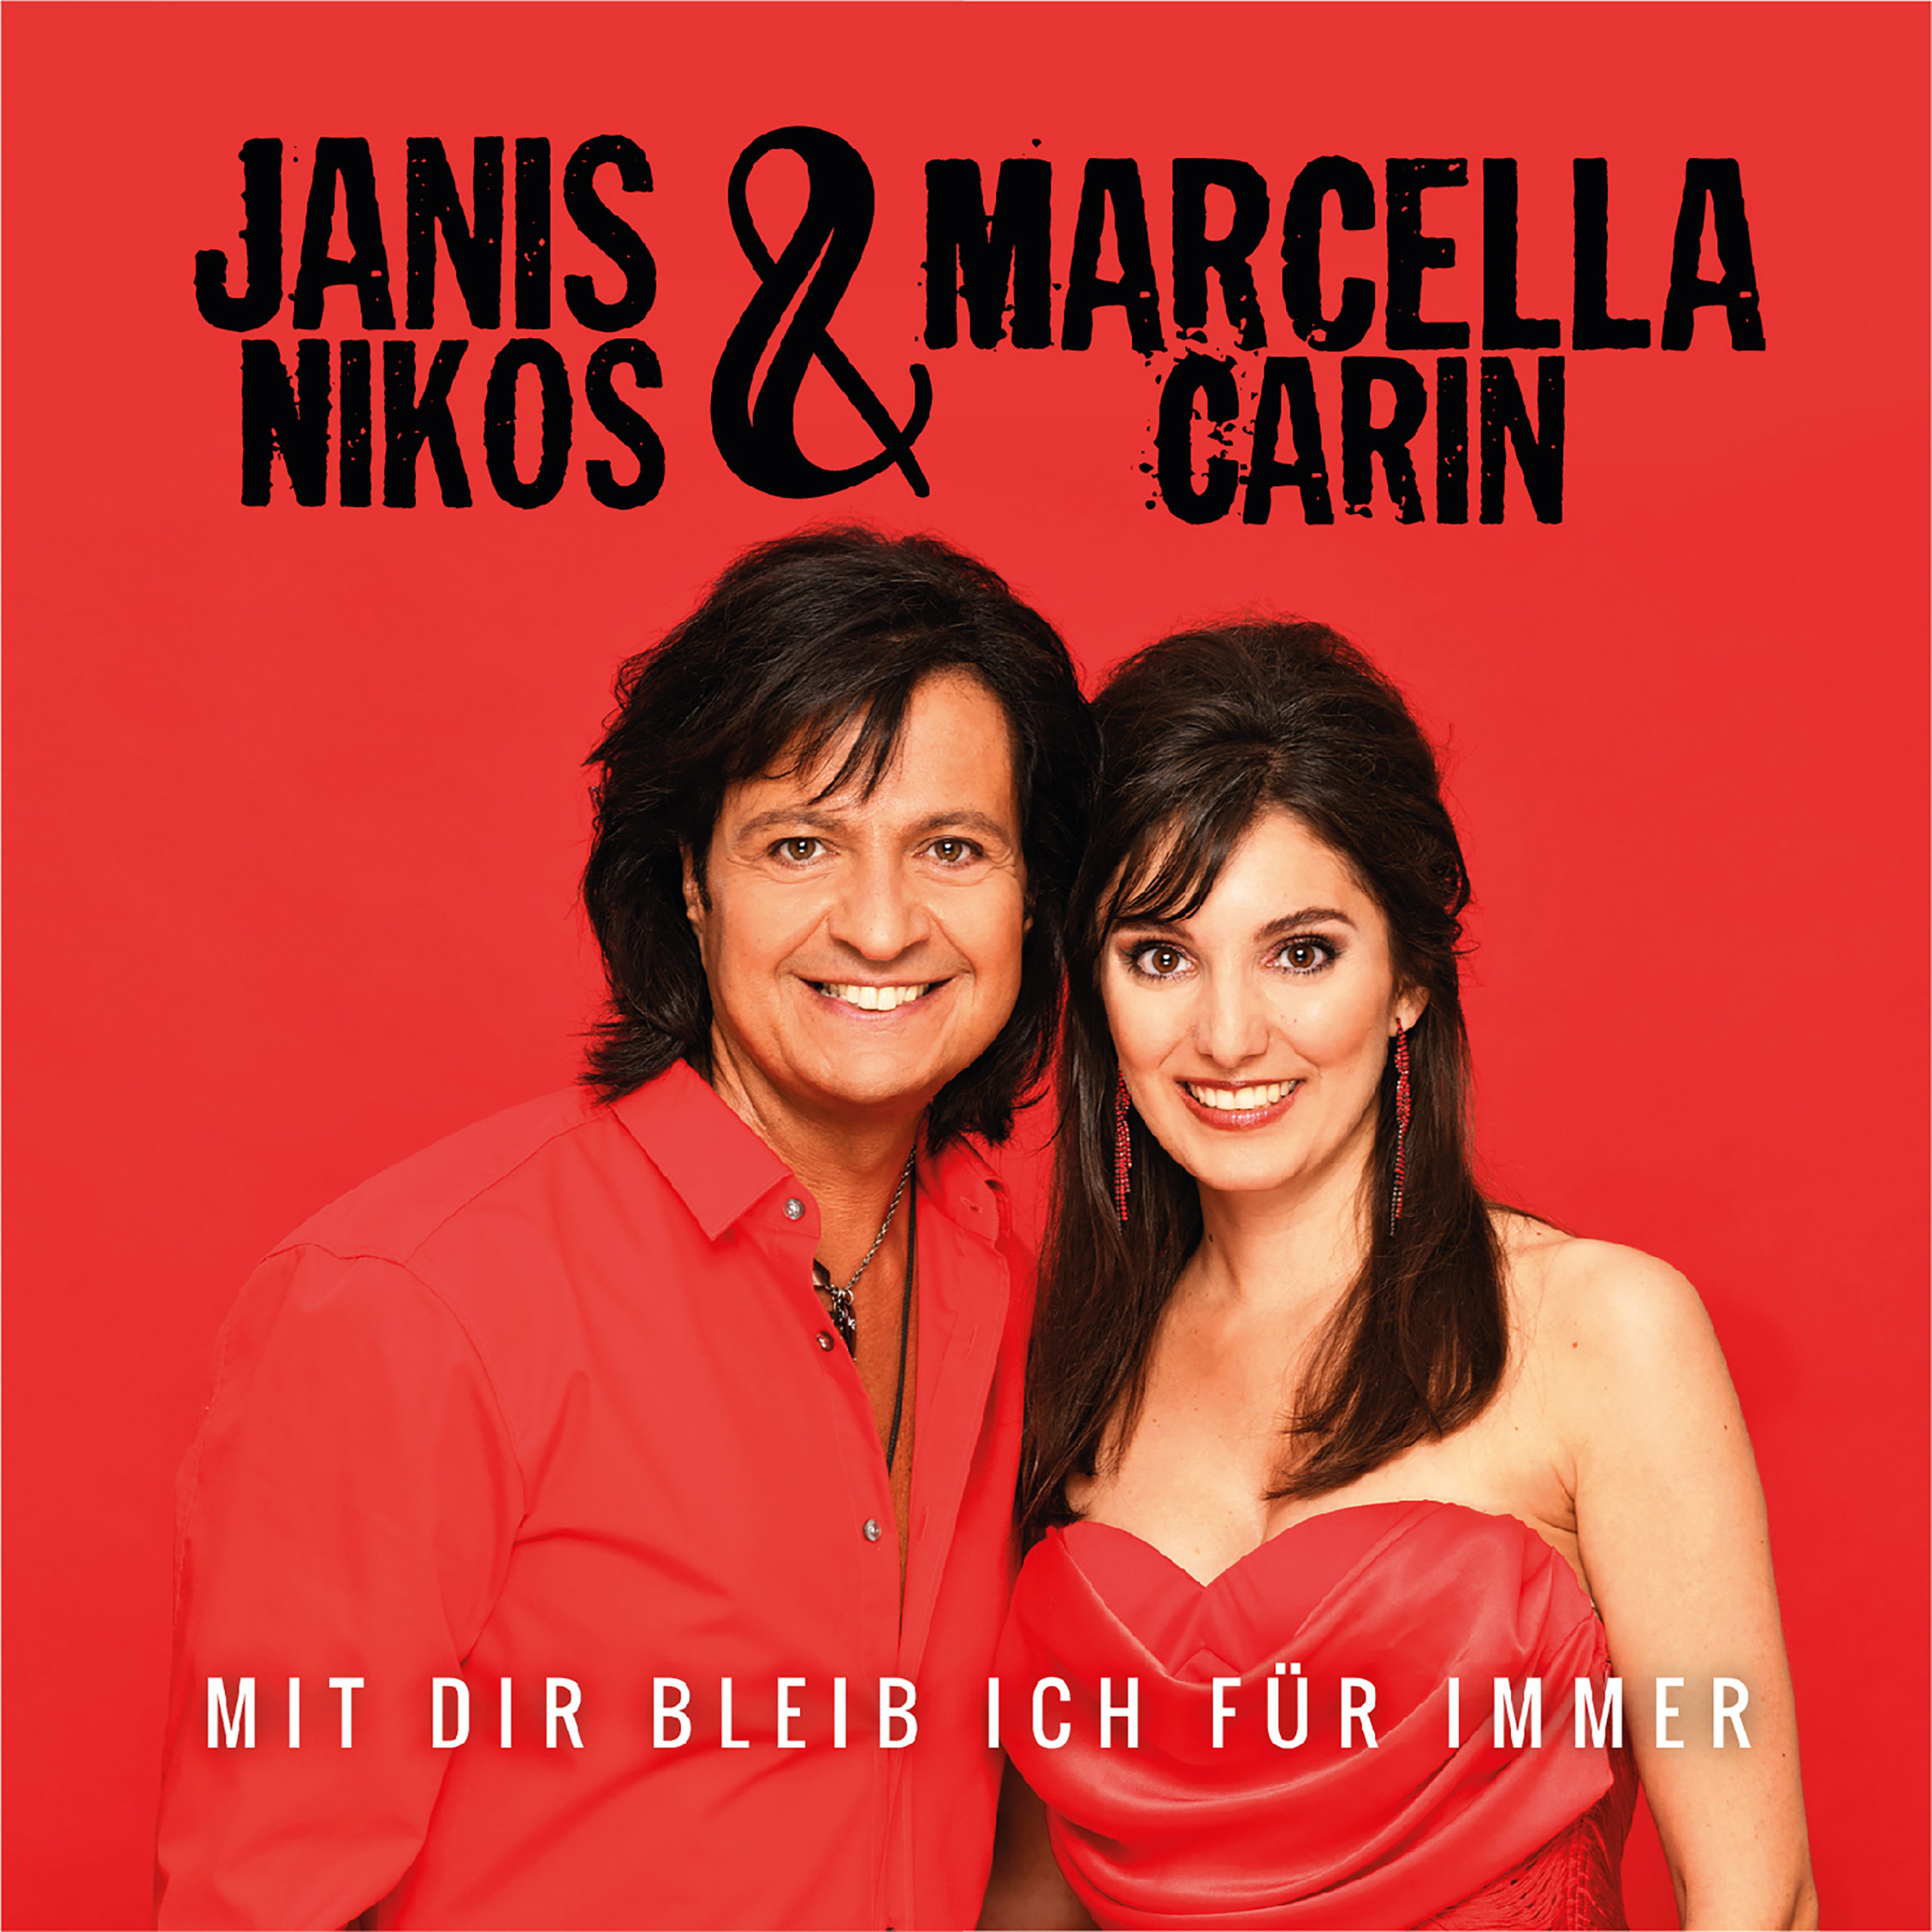 JANIS NIKOS & MARCELLA CARIN * Mit dir bleib ich für immer ((We\\\'re Gonna Stay Together))  (Download-Track)